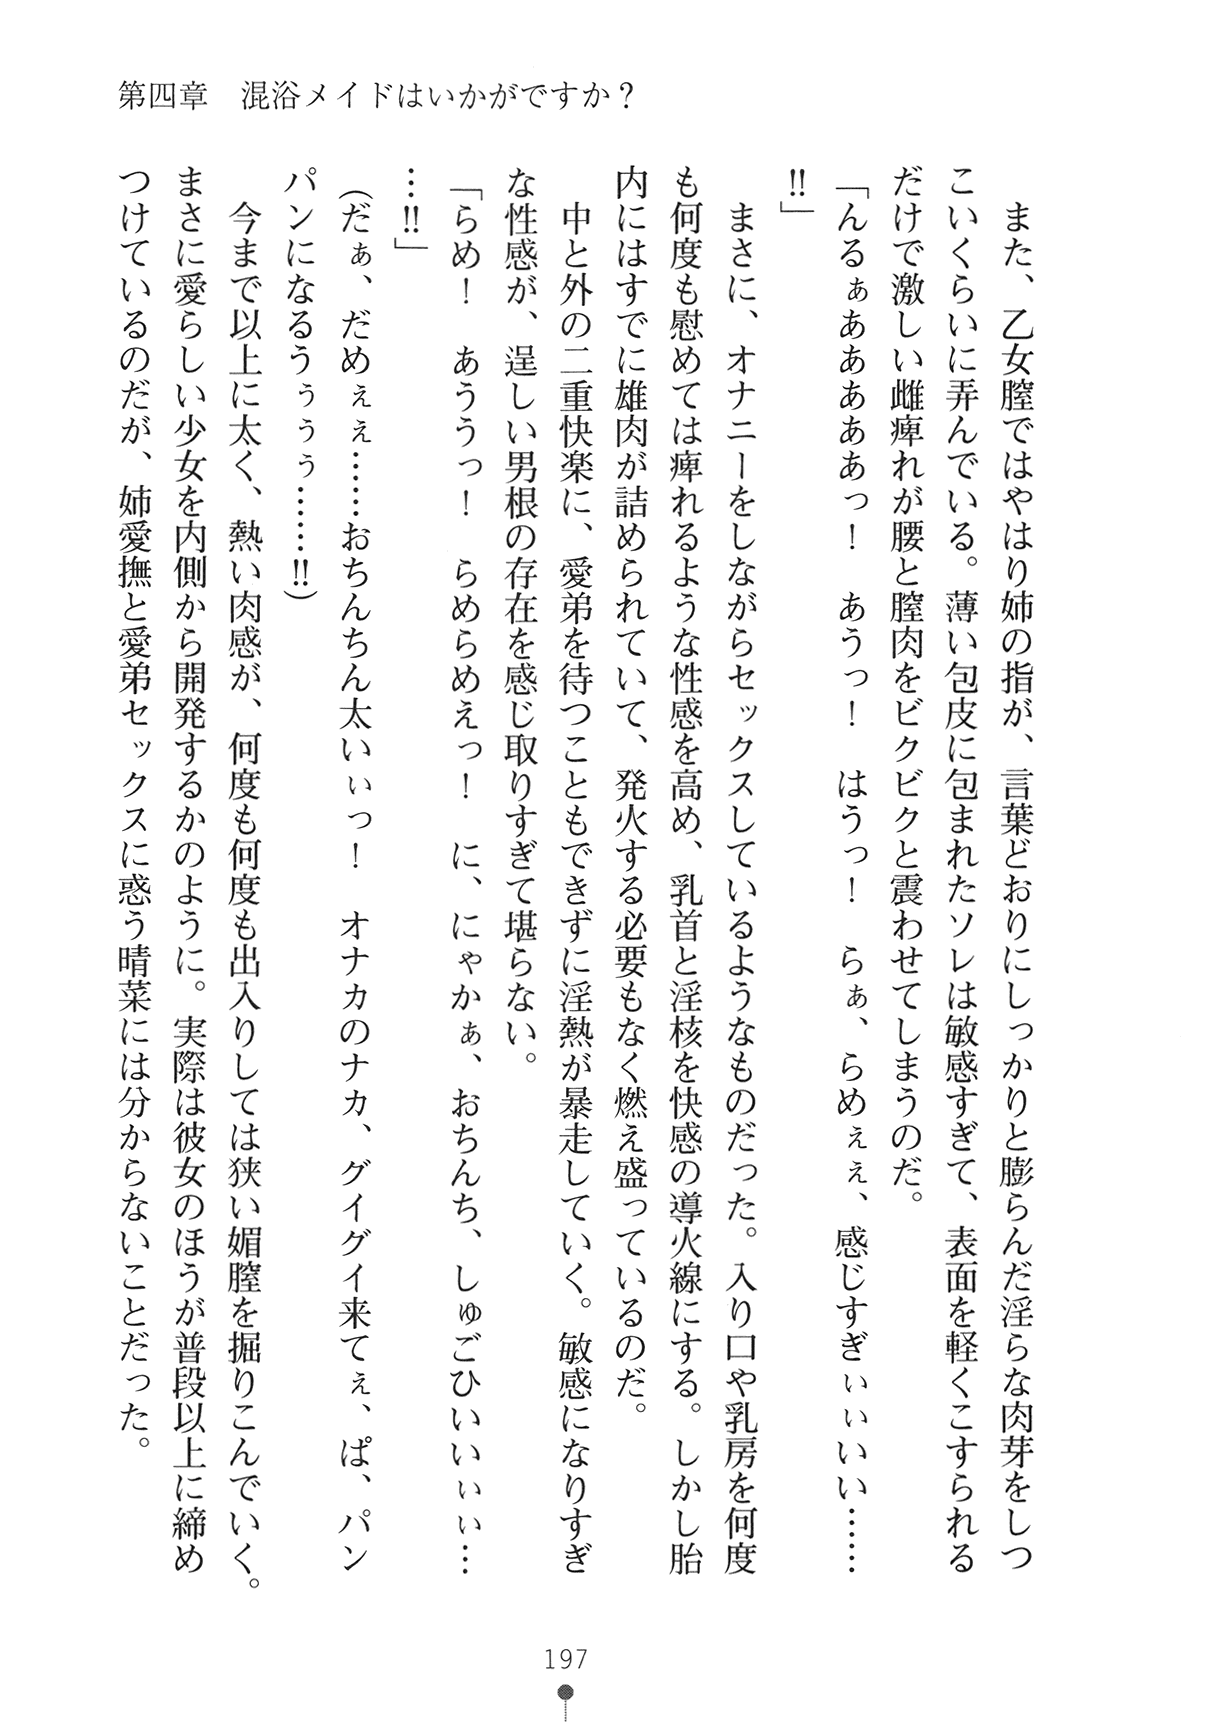 [Obakyu-Taro × Hasegawa Yukino] Maid na Oneesan ha Ikaga Desuka? | Would You Like Maid Sister? [089タロー & 長谷川ユキノ] メイドなお姉さんはいかがですか？ (二次元ドリーム文庫148)